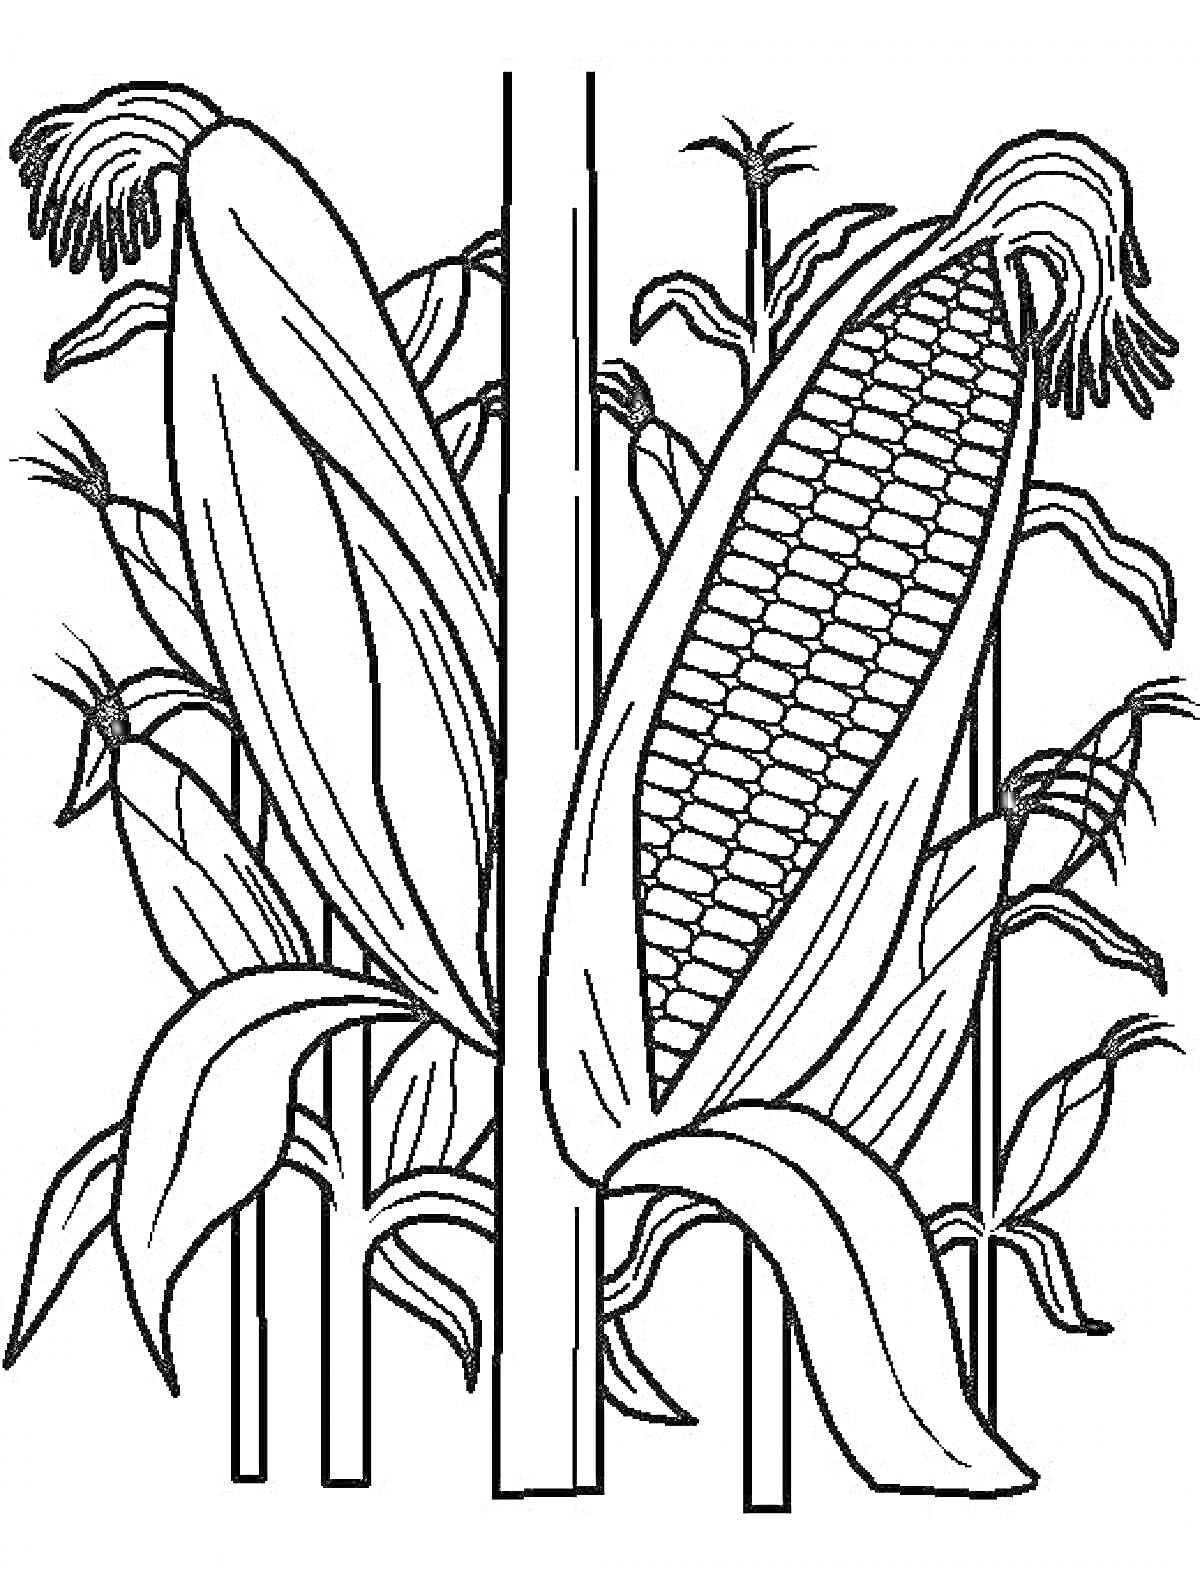 Раскраска Кукуруза в стадии роста с початками и листьями